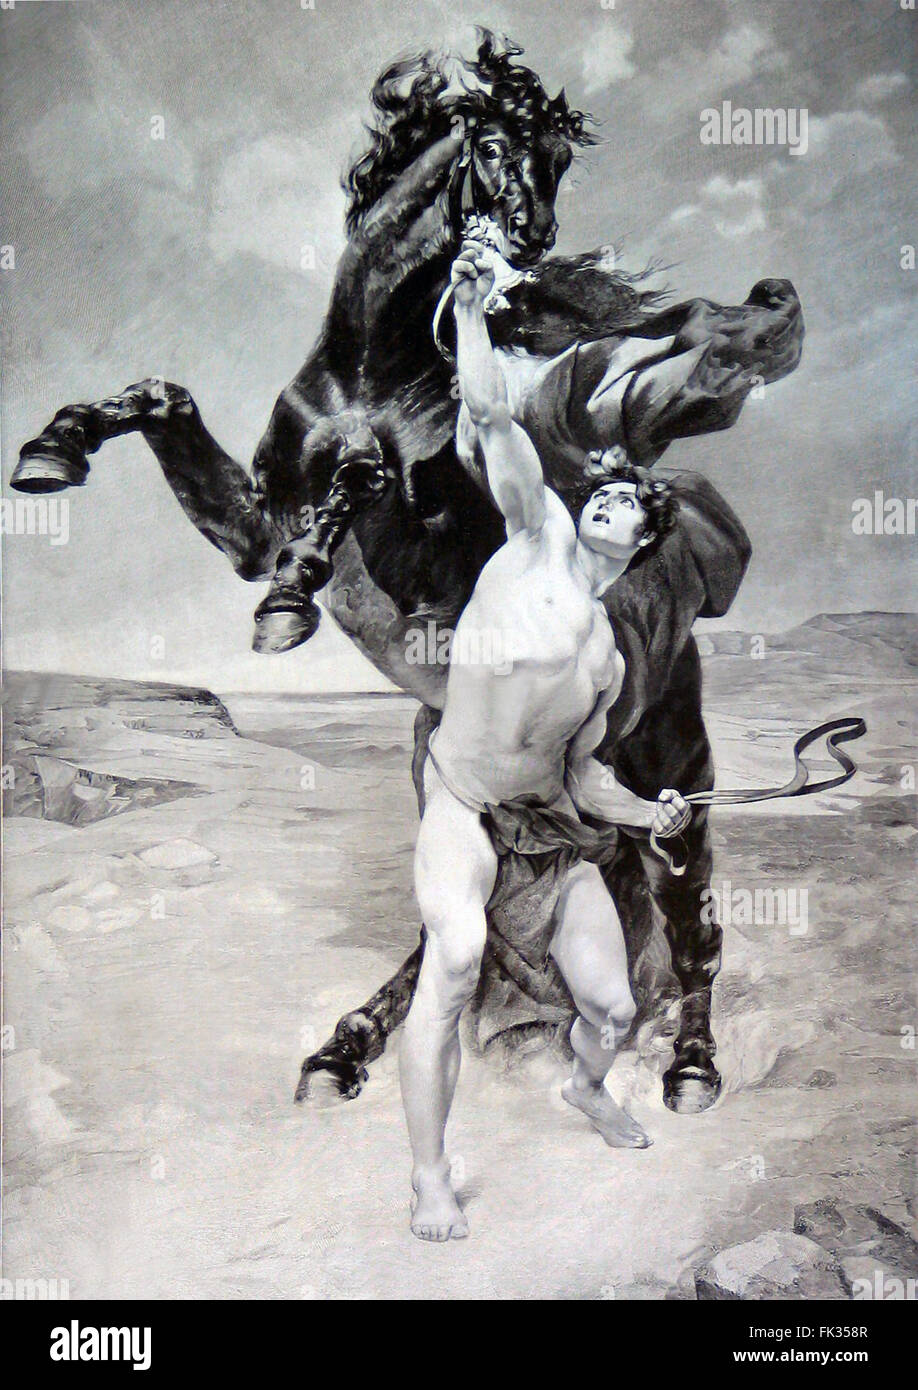 Gravure d'Alexandre le Grand apprivoiser le cheval Bucephalus D'après un dessin de F. Schommer à la fin du xixe siècle. Image du domaine public en vertu de l'âge. Bucephalus ou Bucephalas était le cheval d'Alexandre le Grand, et l'un des plus célèbres chevaux réels de l'antiquité. Banque D'Images